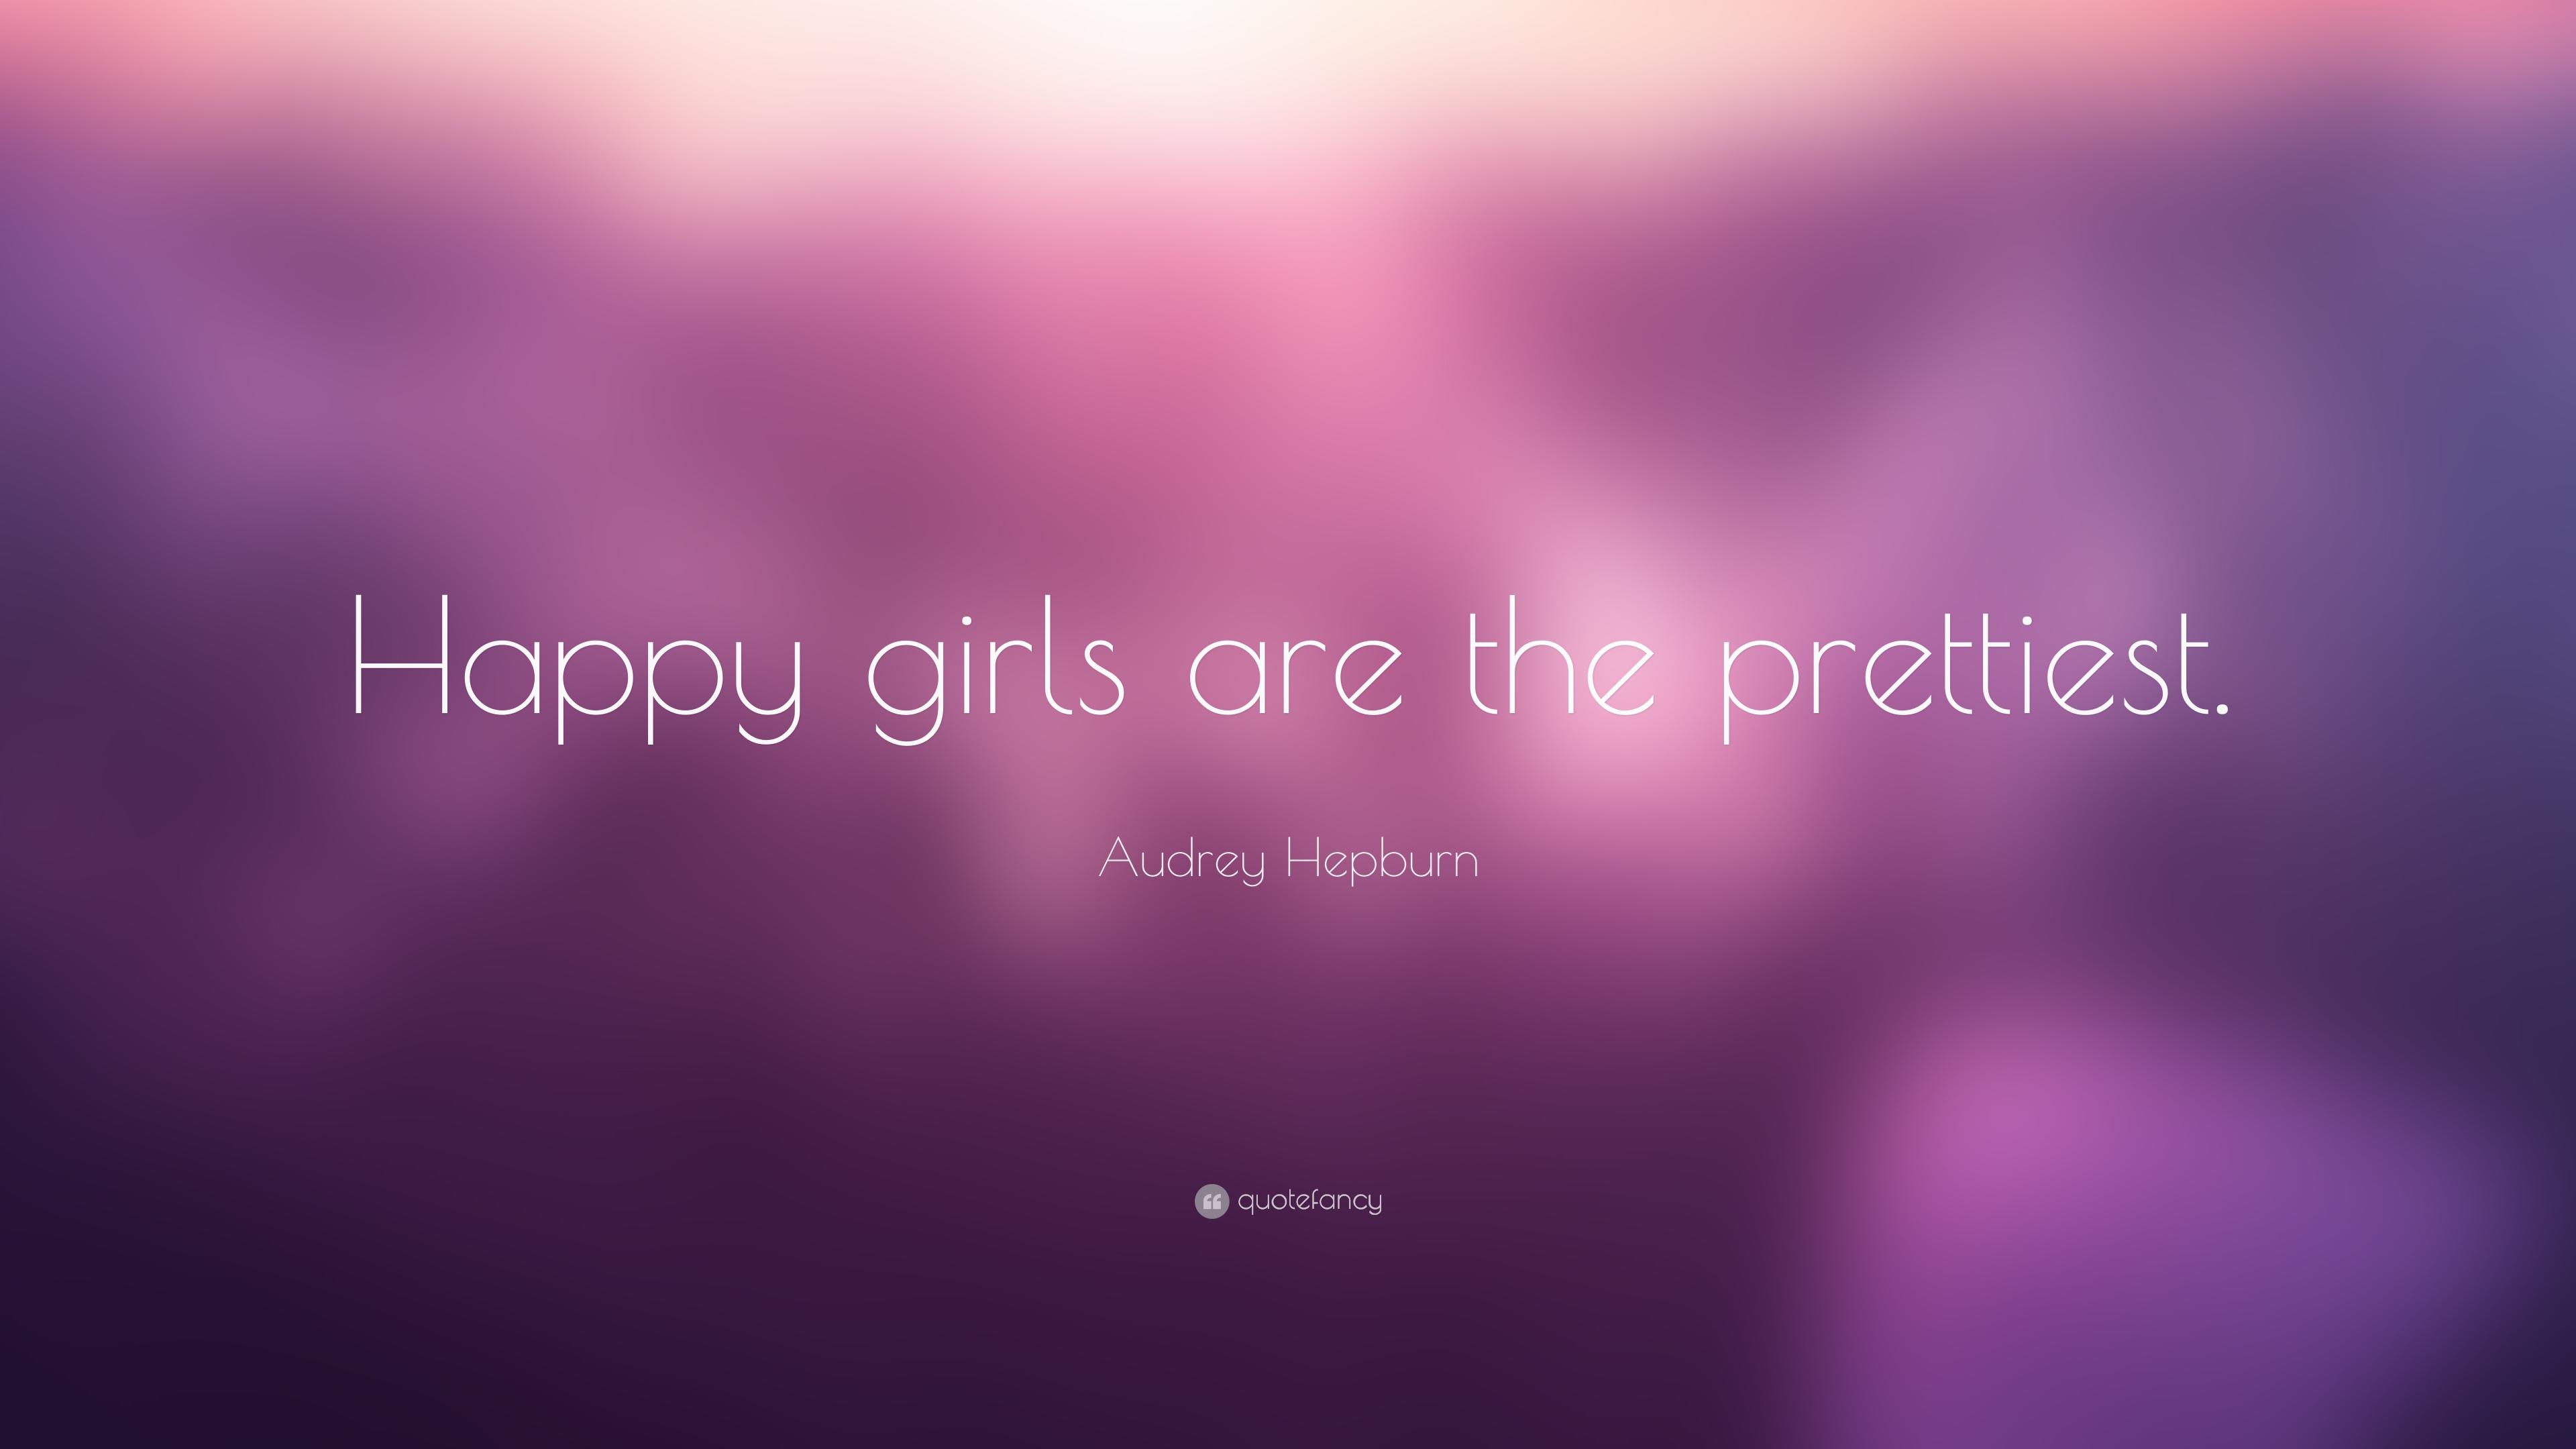 Audrey Hepburn Quote: “Happy girls are the prettiest.” 22